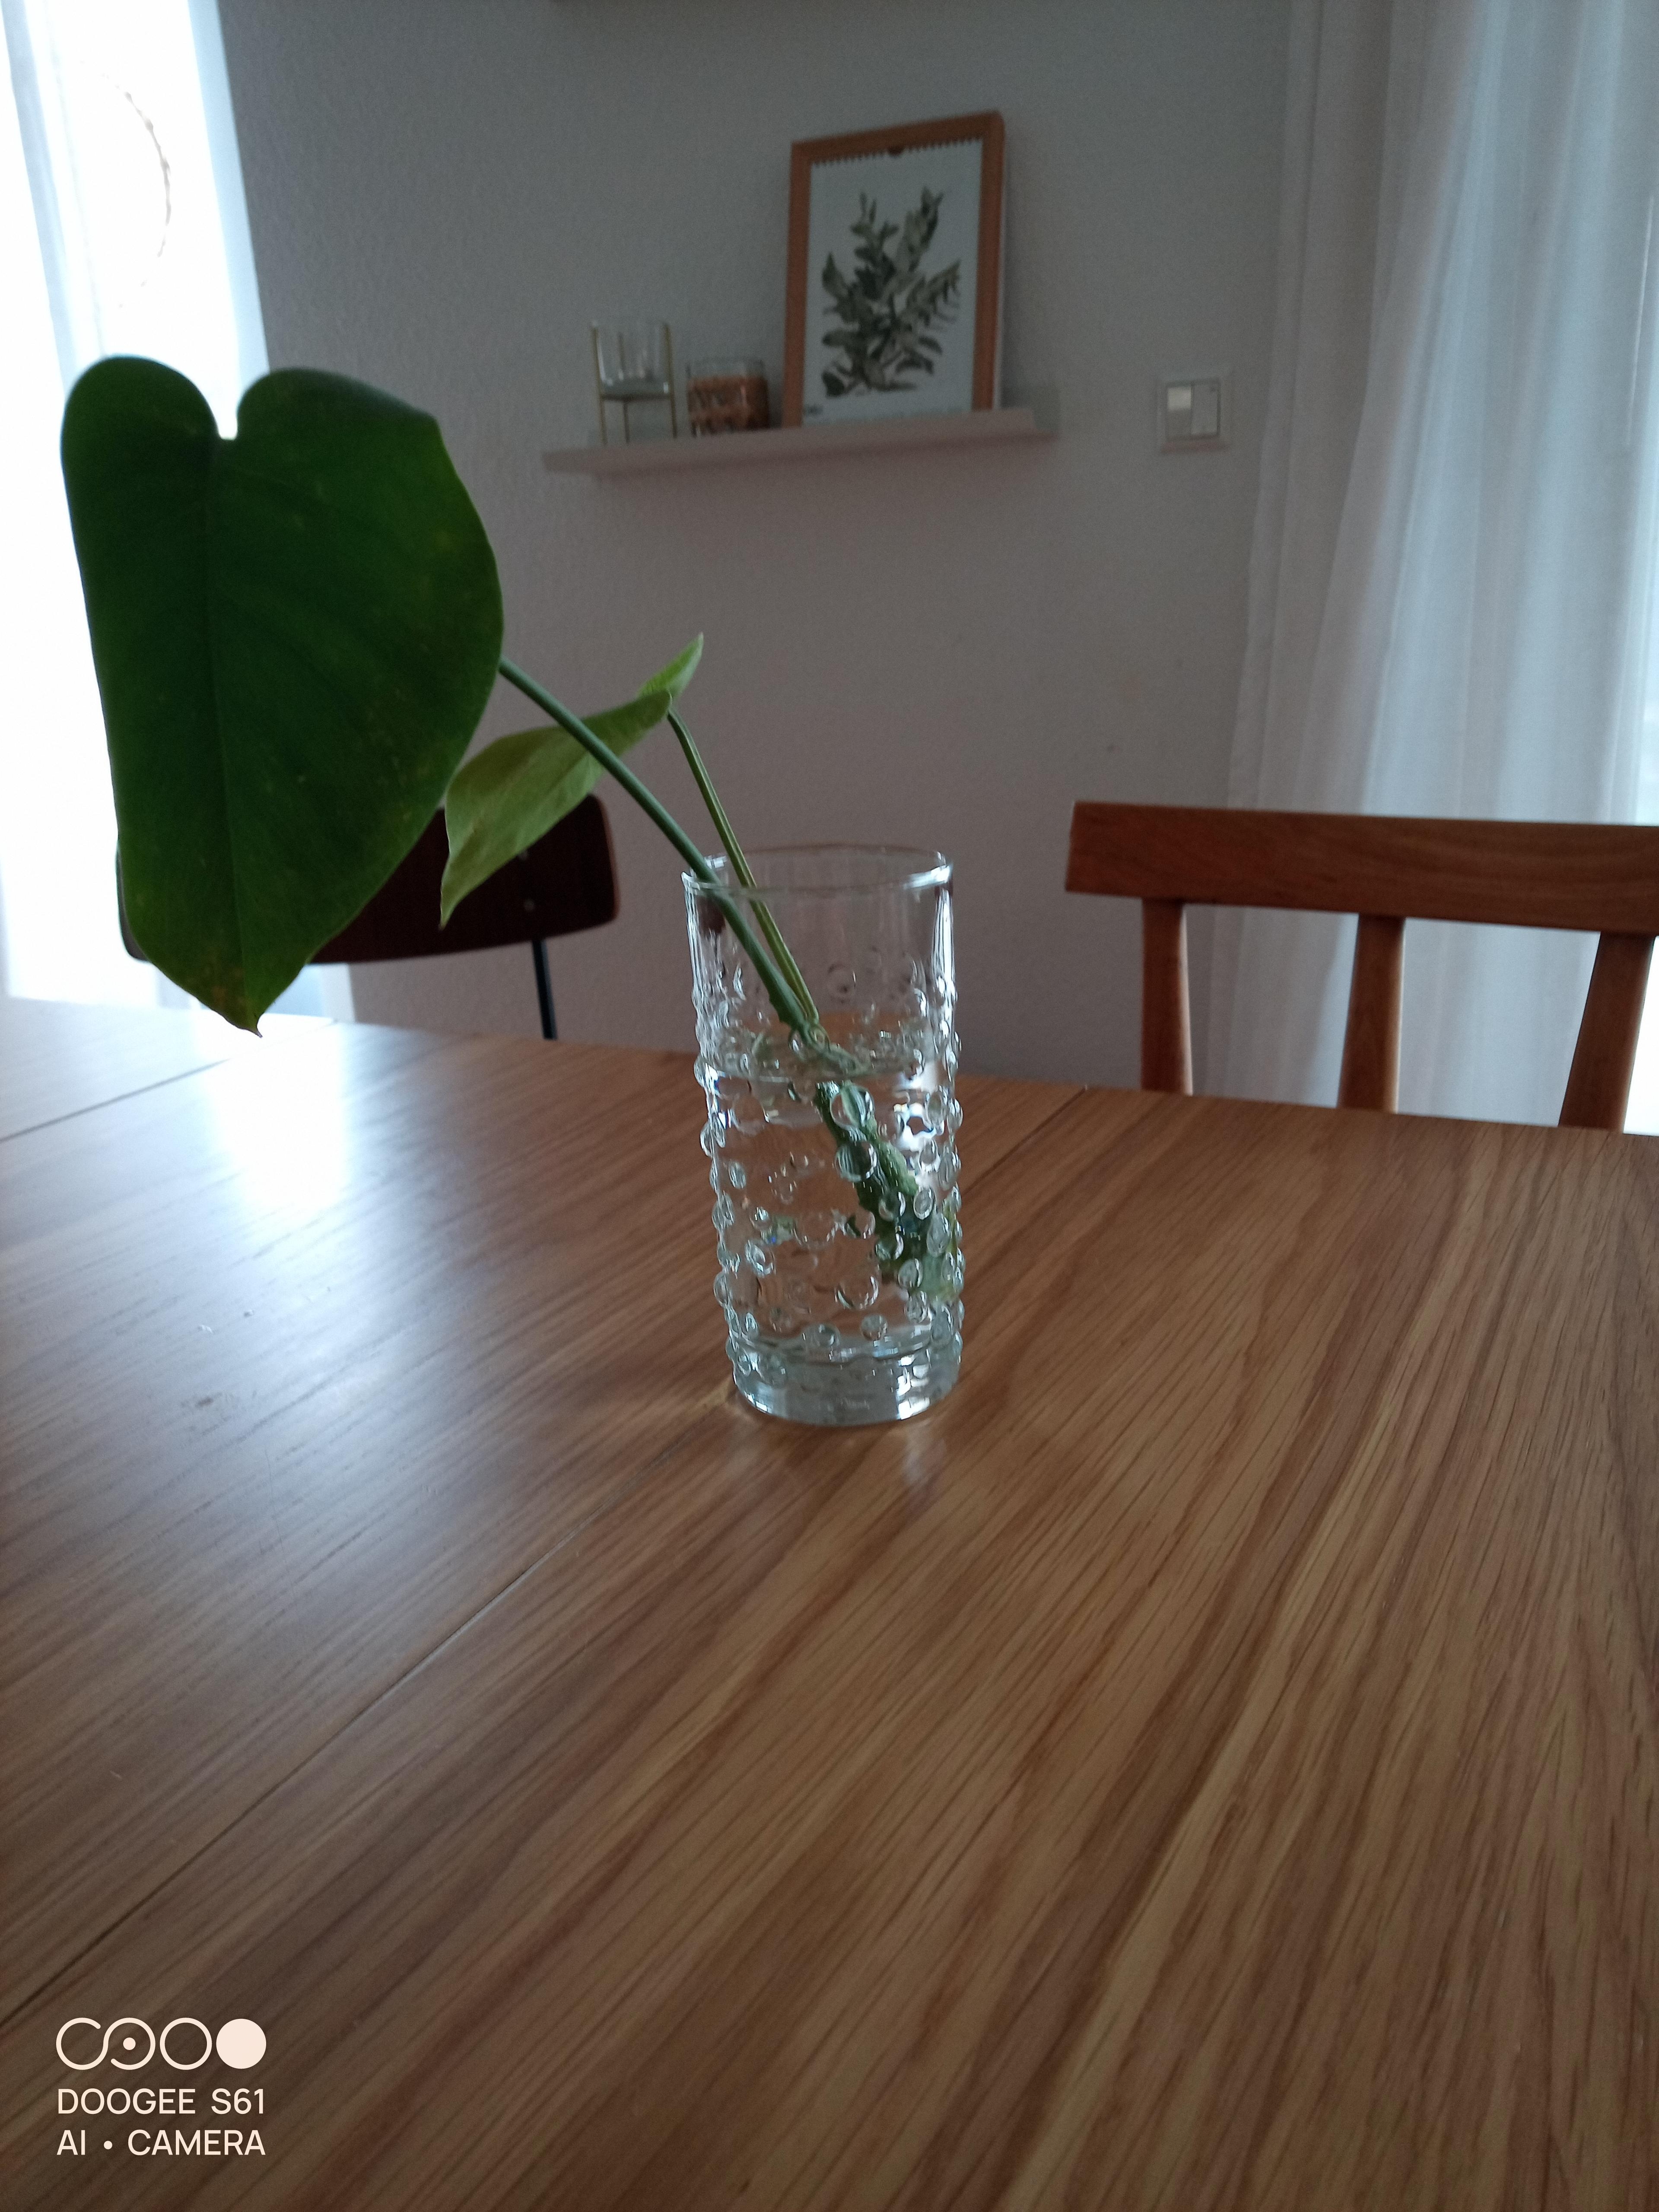 Neue Vase/Glas von Oma

#bubble